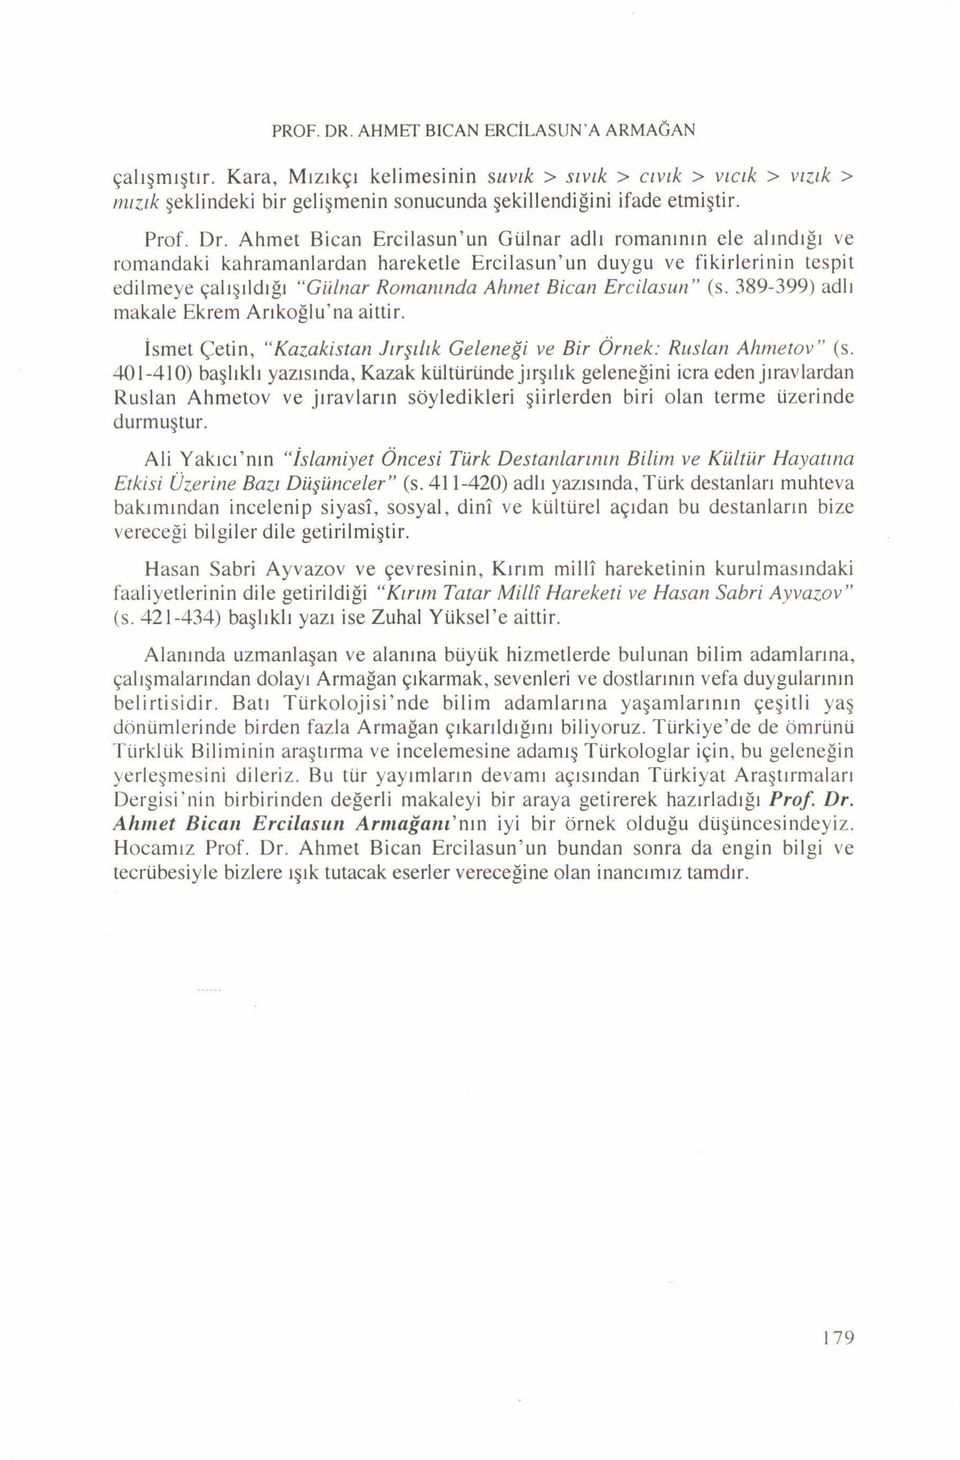 Ercilasun" (s. 389-399) adlı makale Ekrem Arıkoğlu na aittir. İsmet Çetin, "Kazakistan Jırşılık Geleneği ve Bir Örnek: Ruslan A hm etov (s.